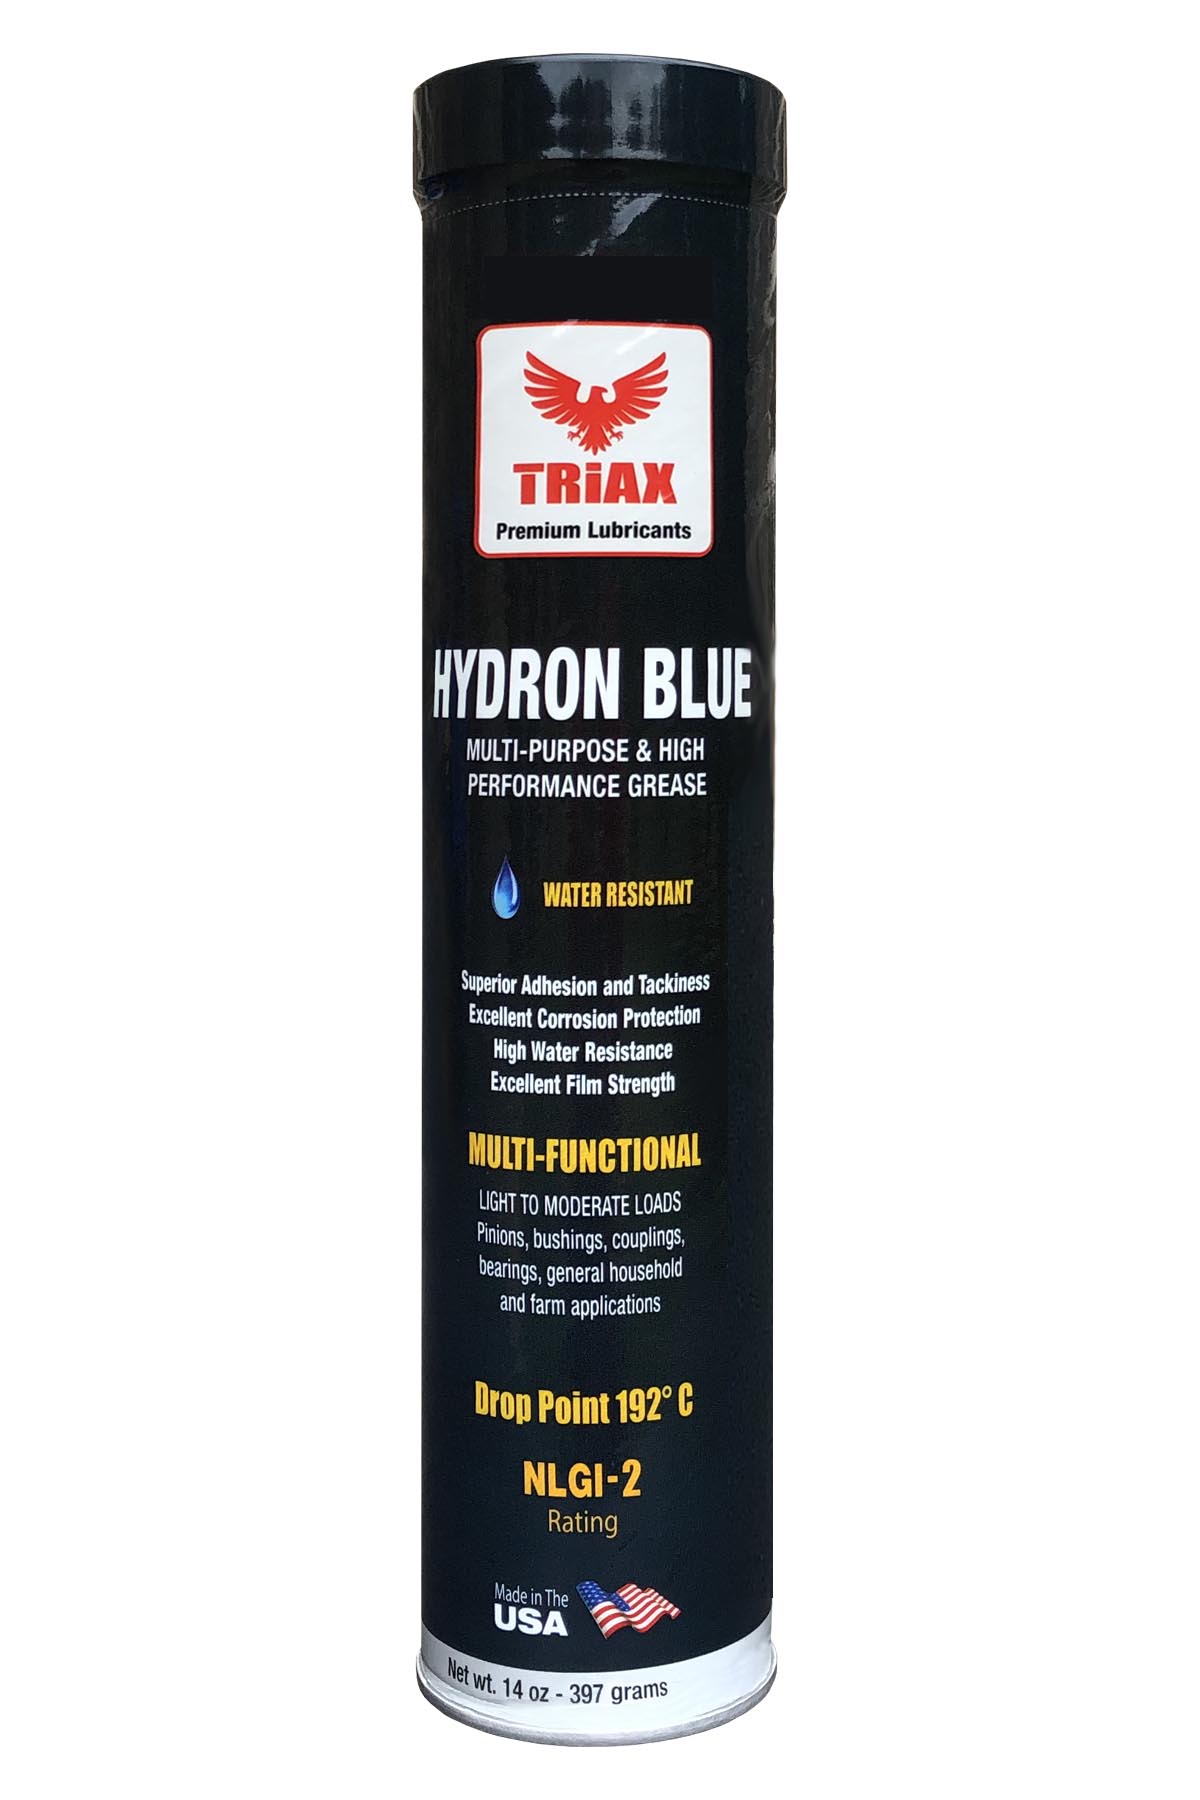 TRIAX Hydron Blue